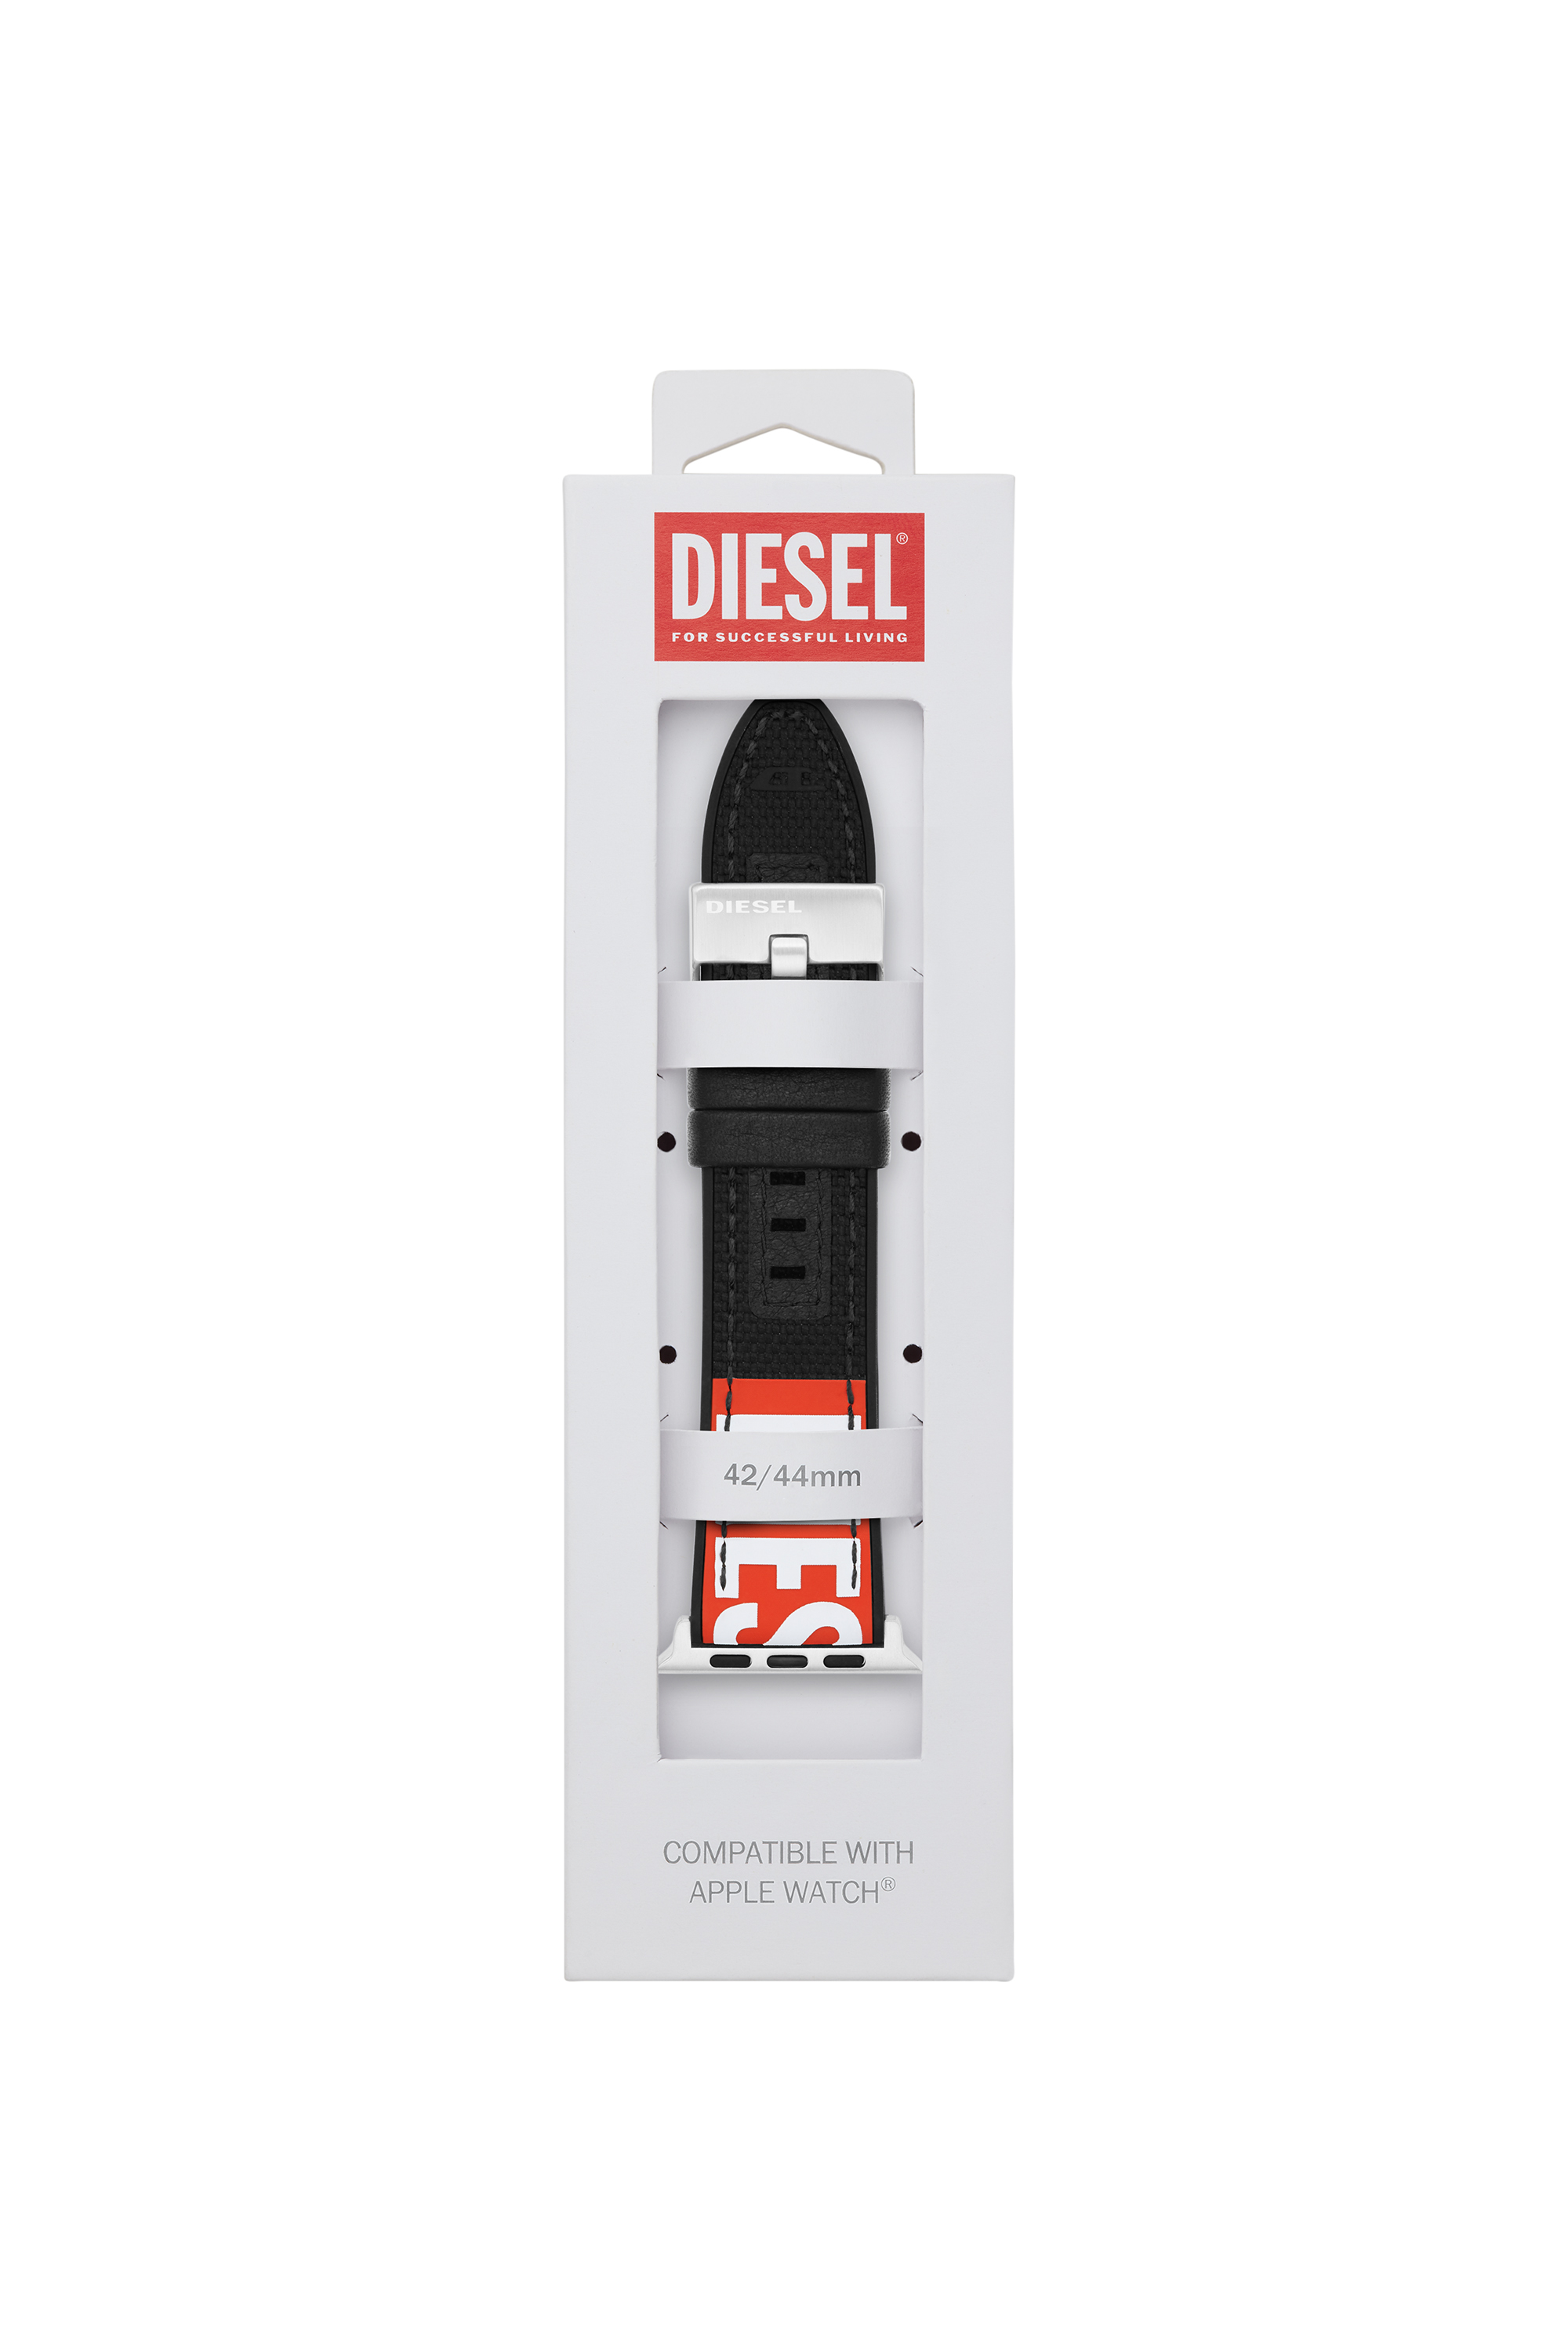 Diesel - DSS005, Schwarz - Image 2